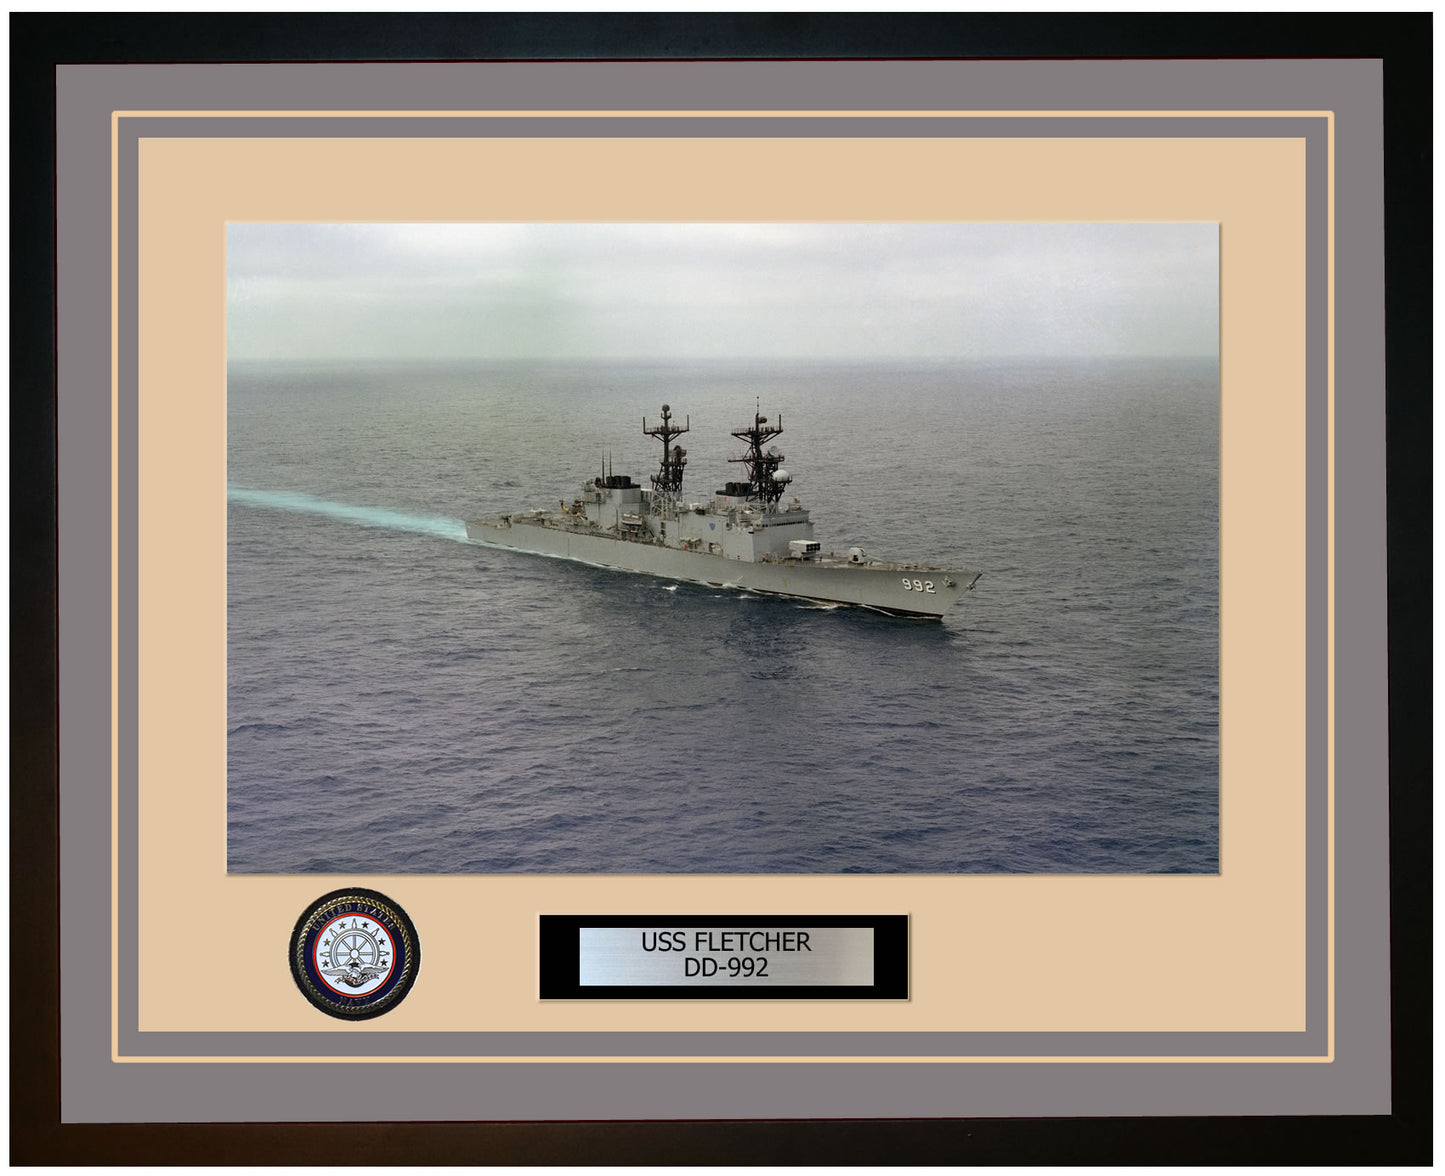 USS FLETCHER DD-992 Framed Navy Ship Photo Grey